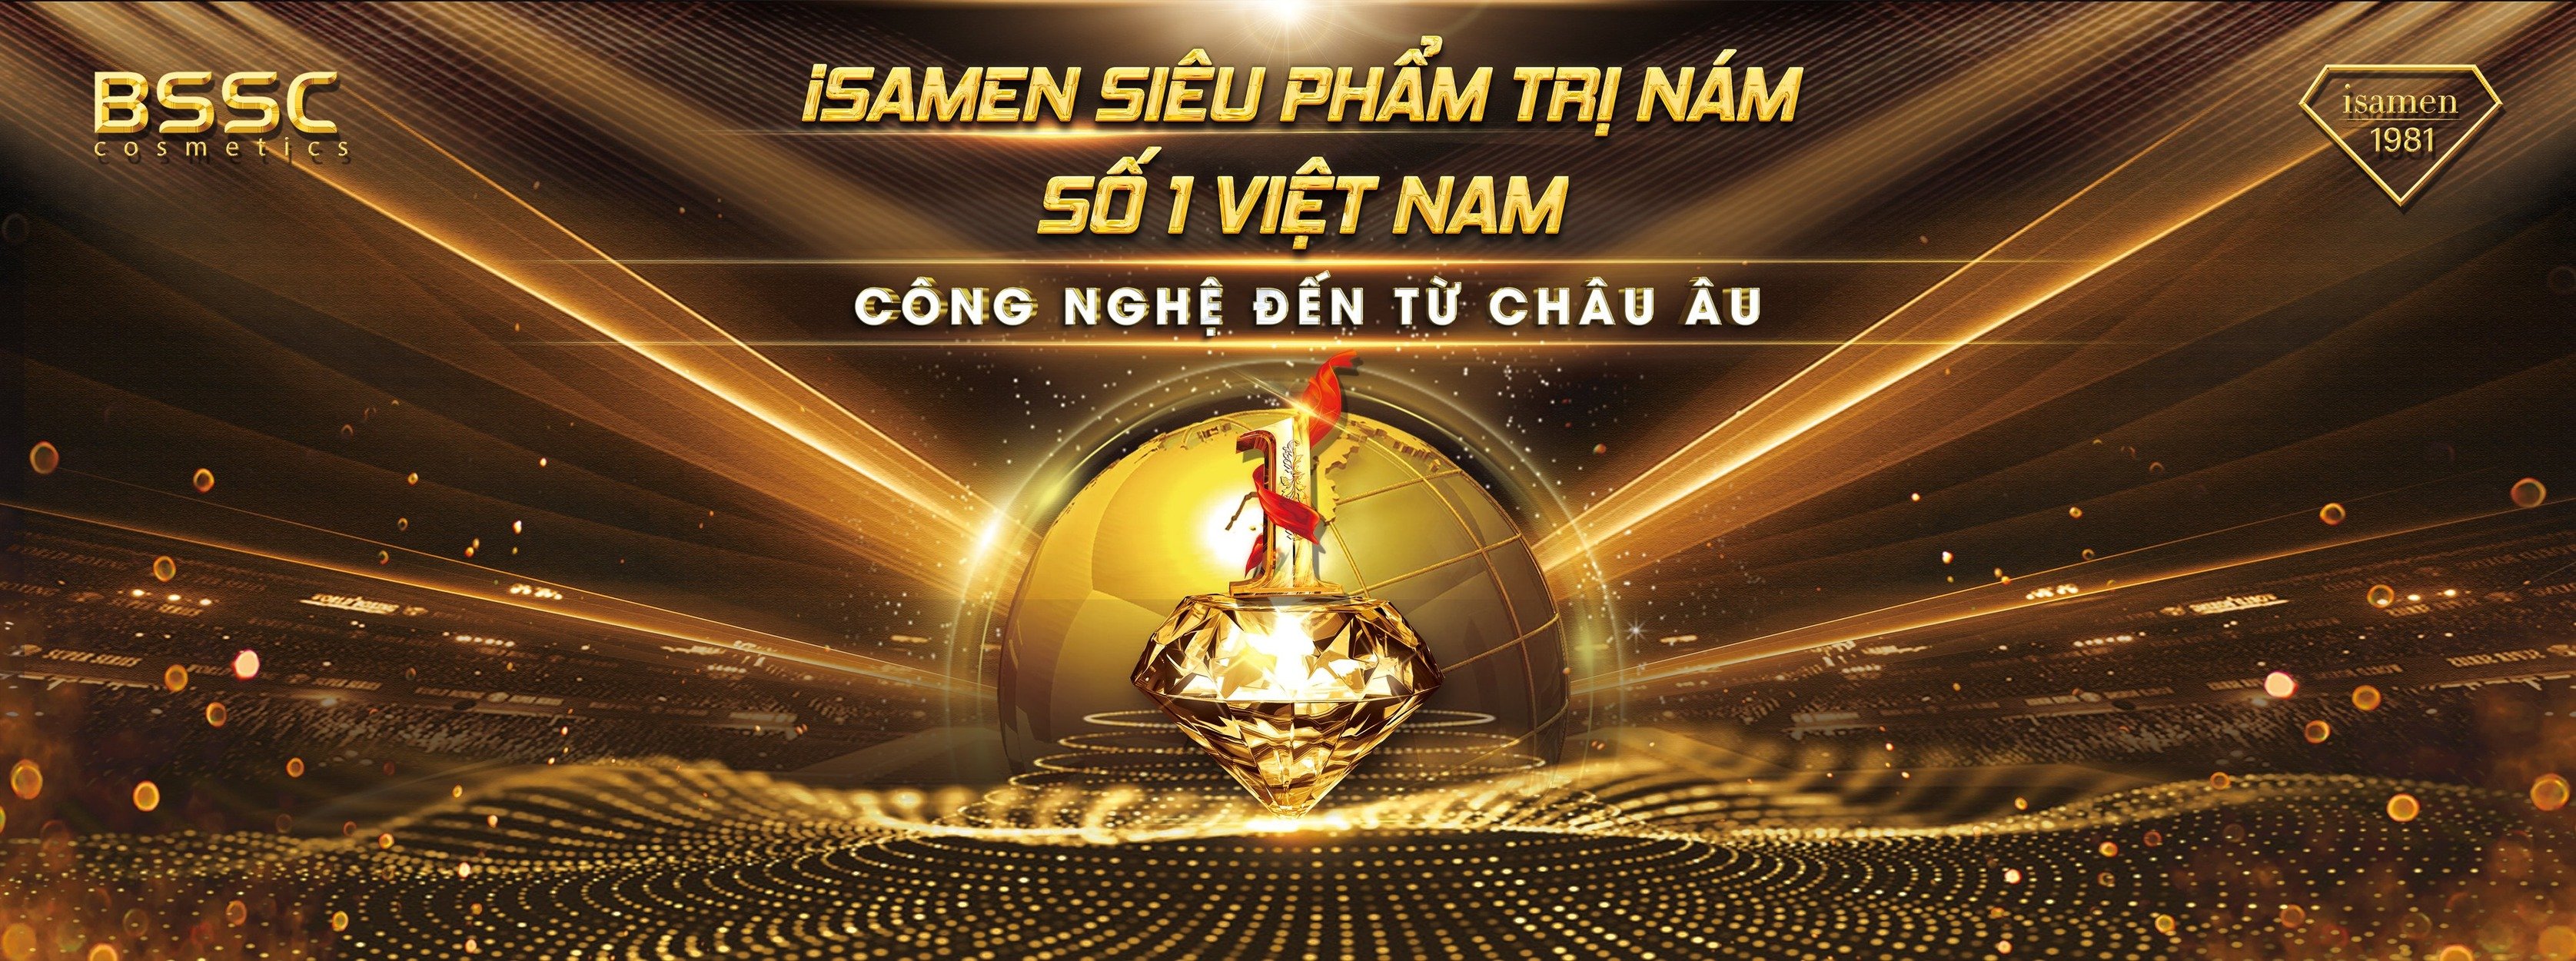 iSAMEN Việt NAM